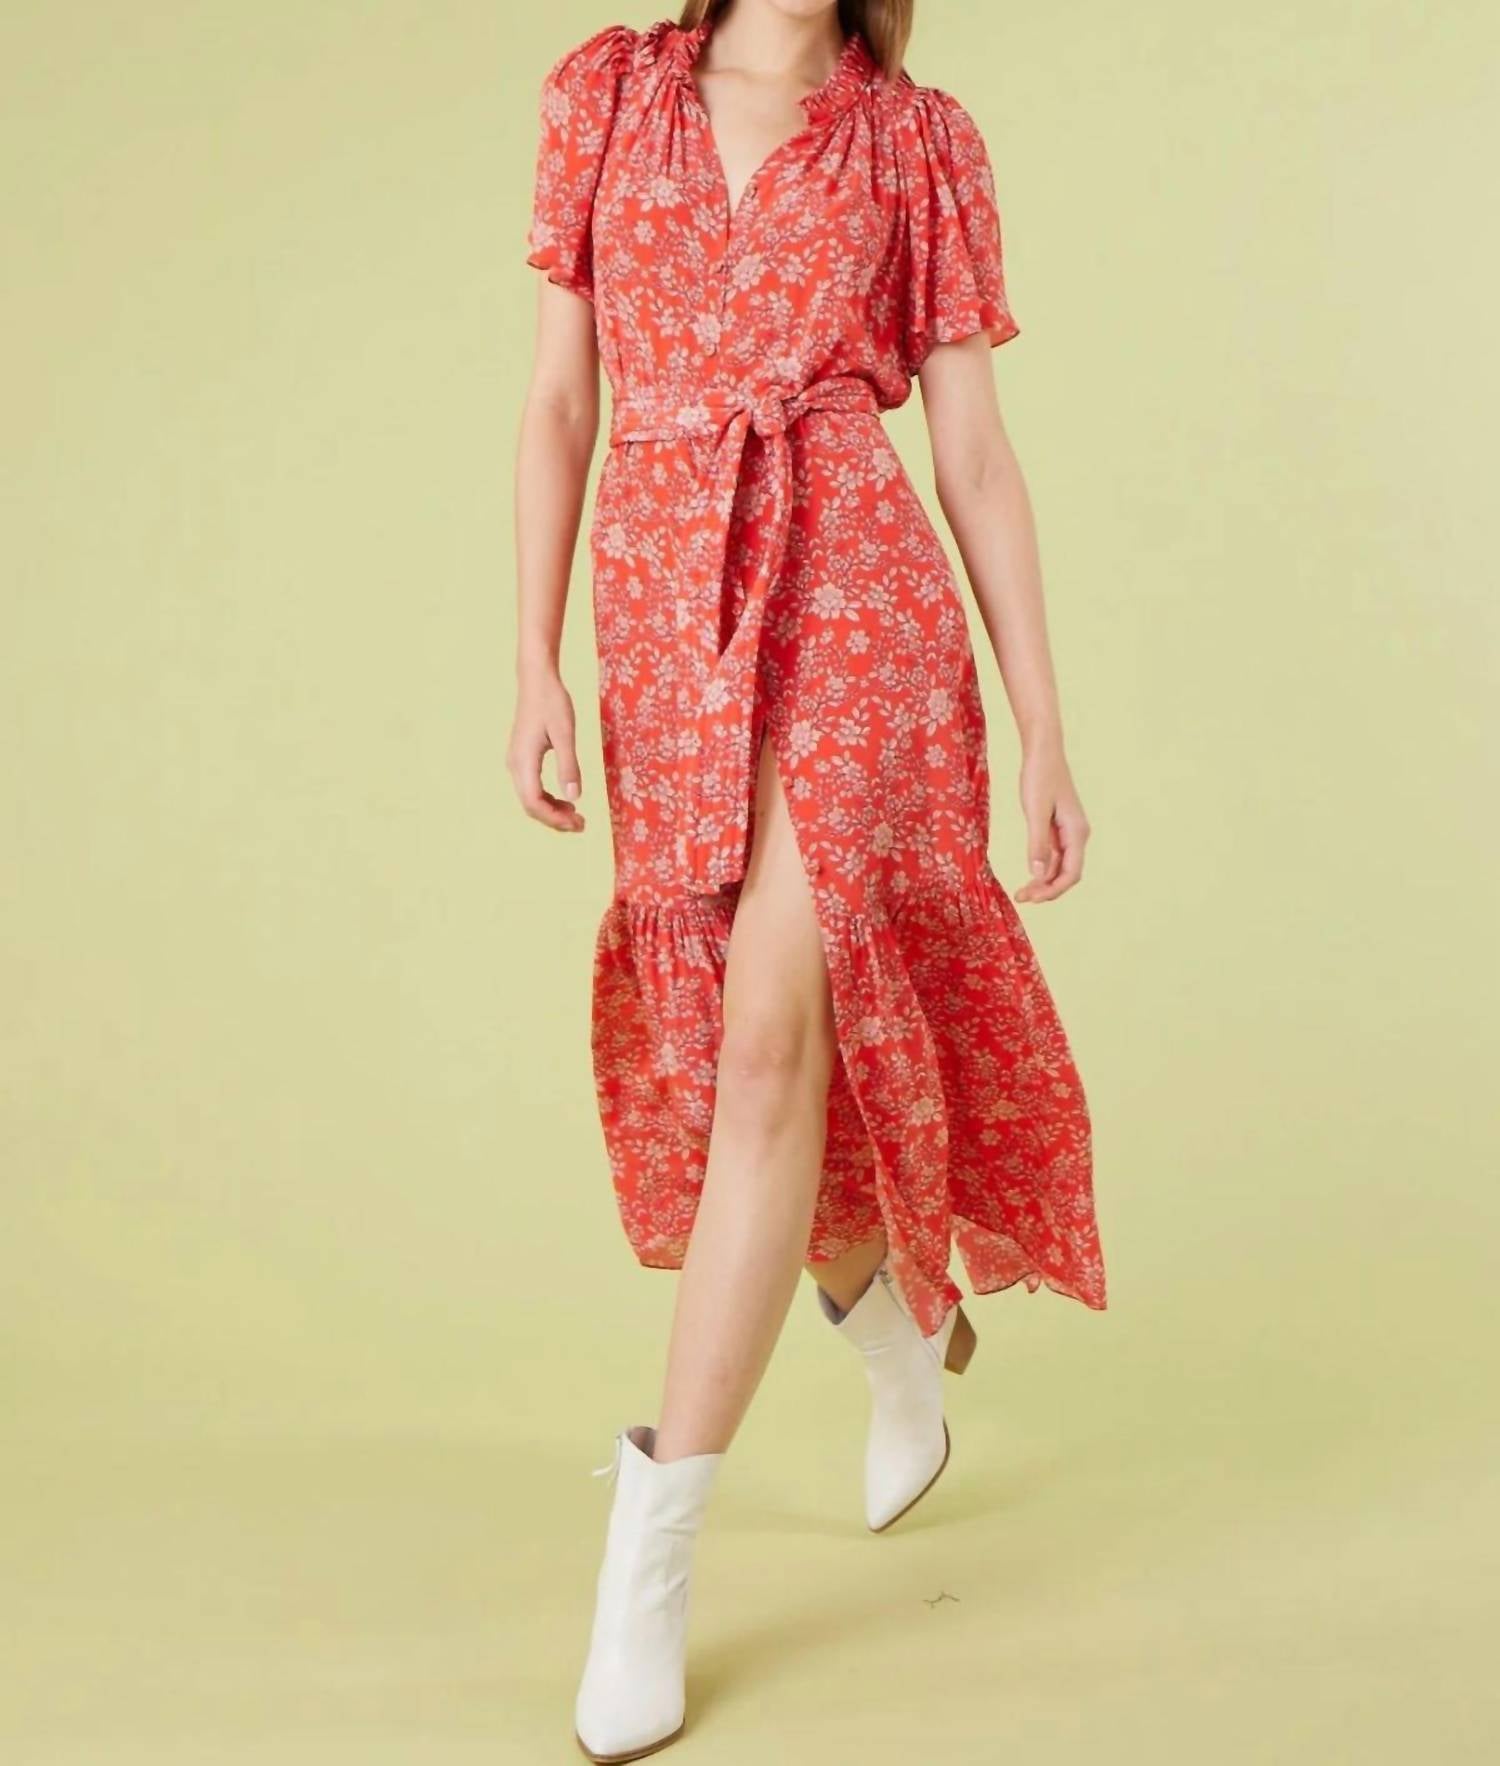 Gilner Farrar Sydney Dress in Whispering Floral | Shop Premium Outlets